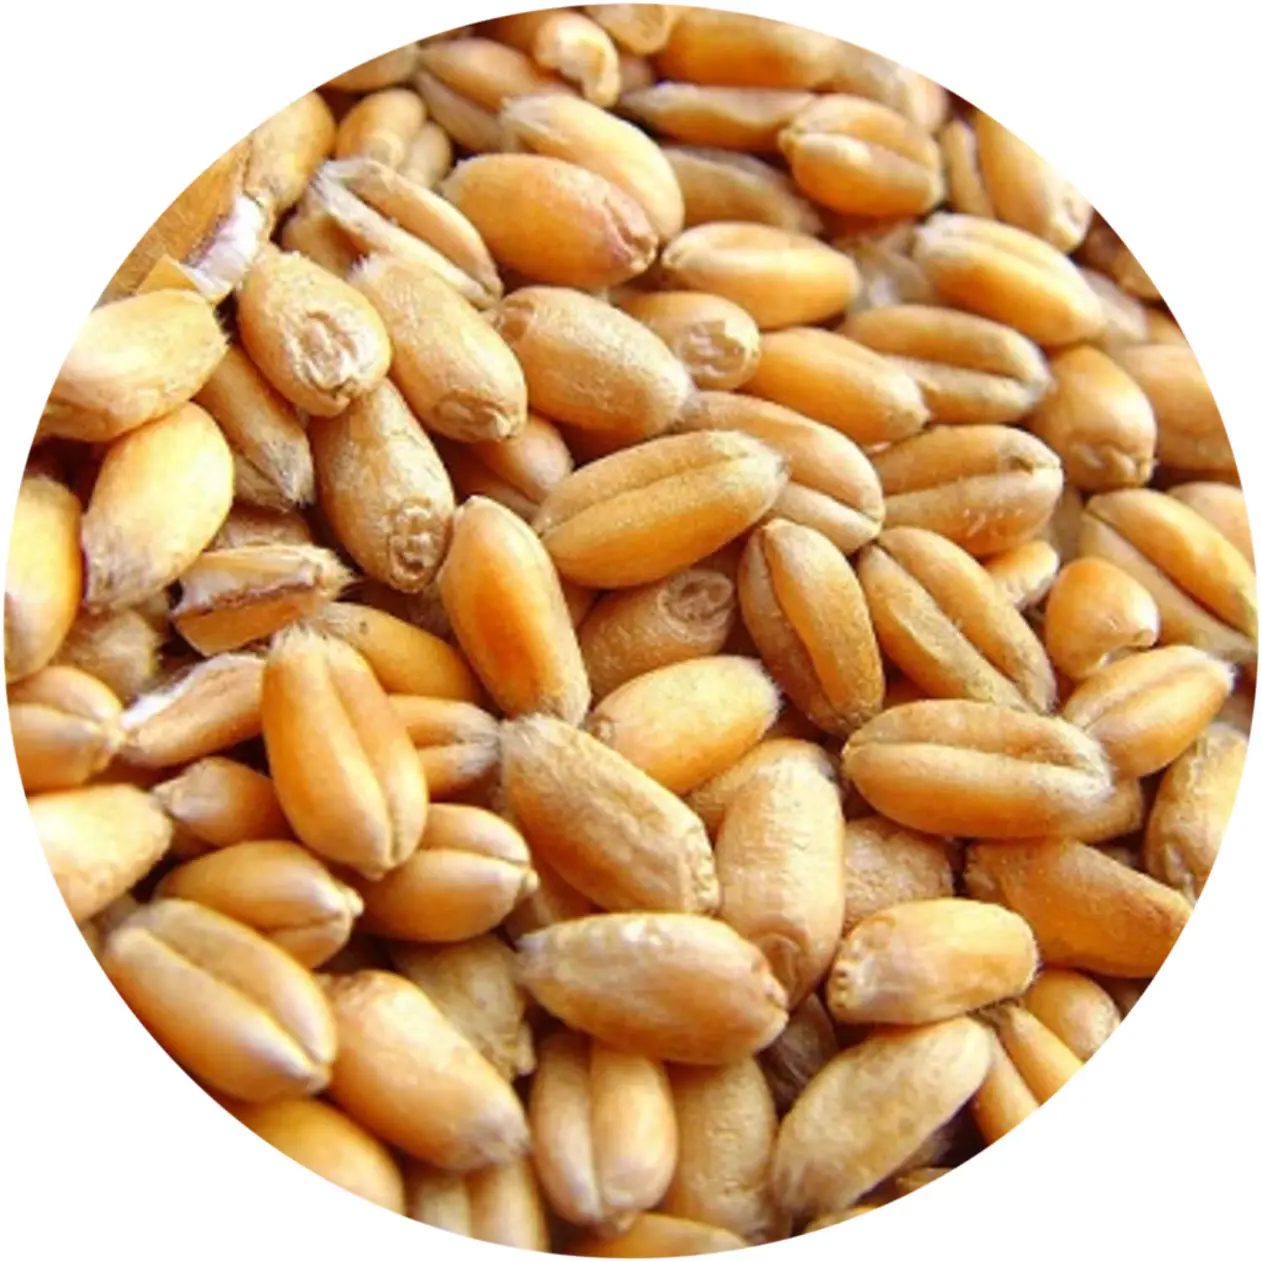 Цельное пшеничное зерно